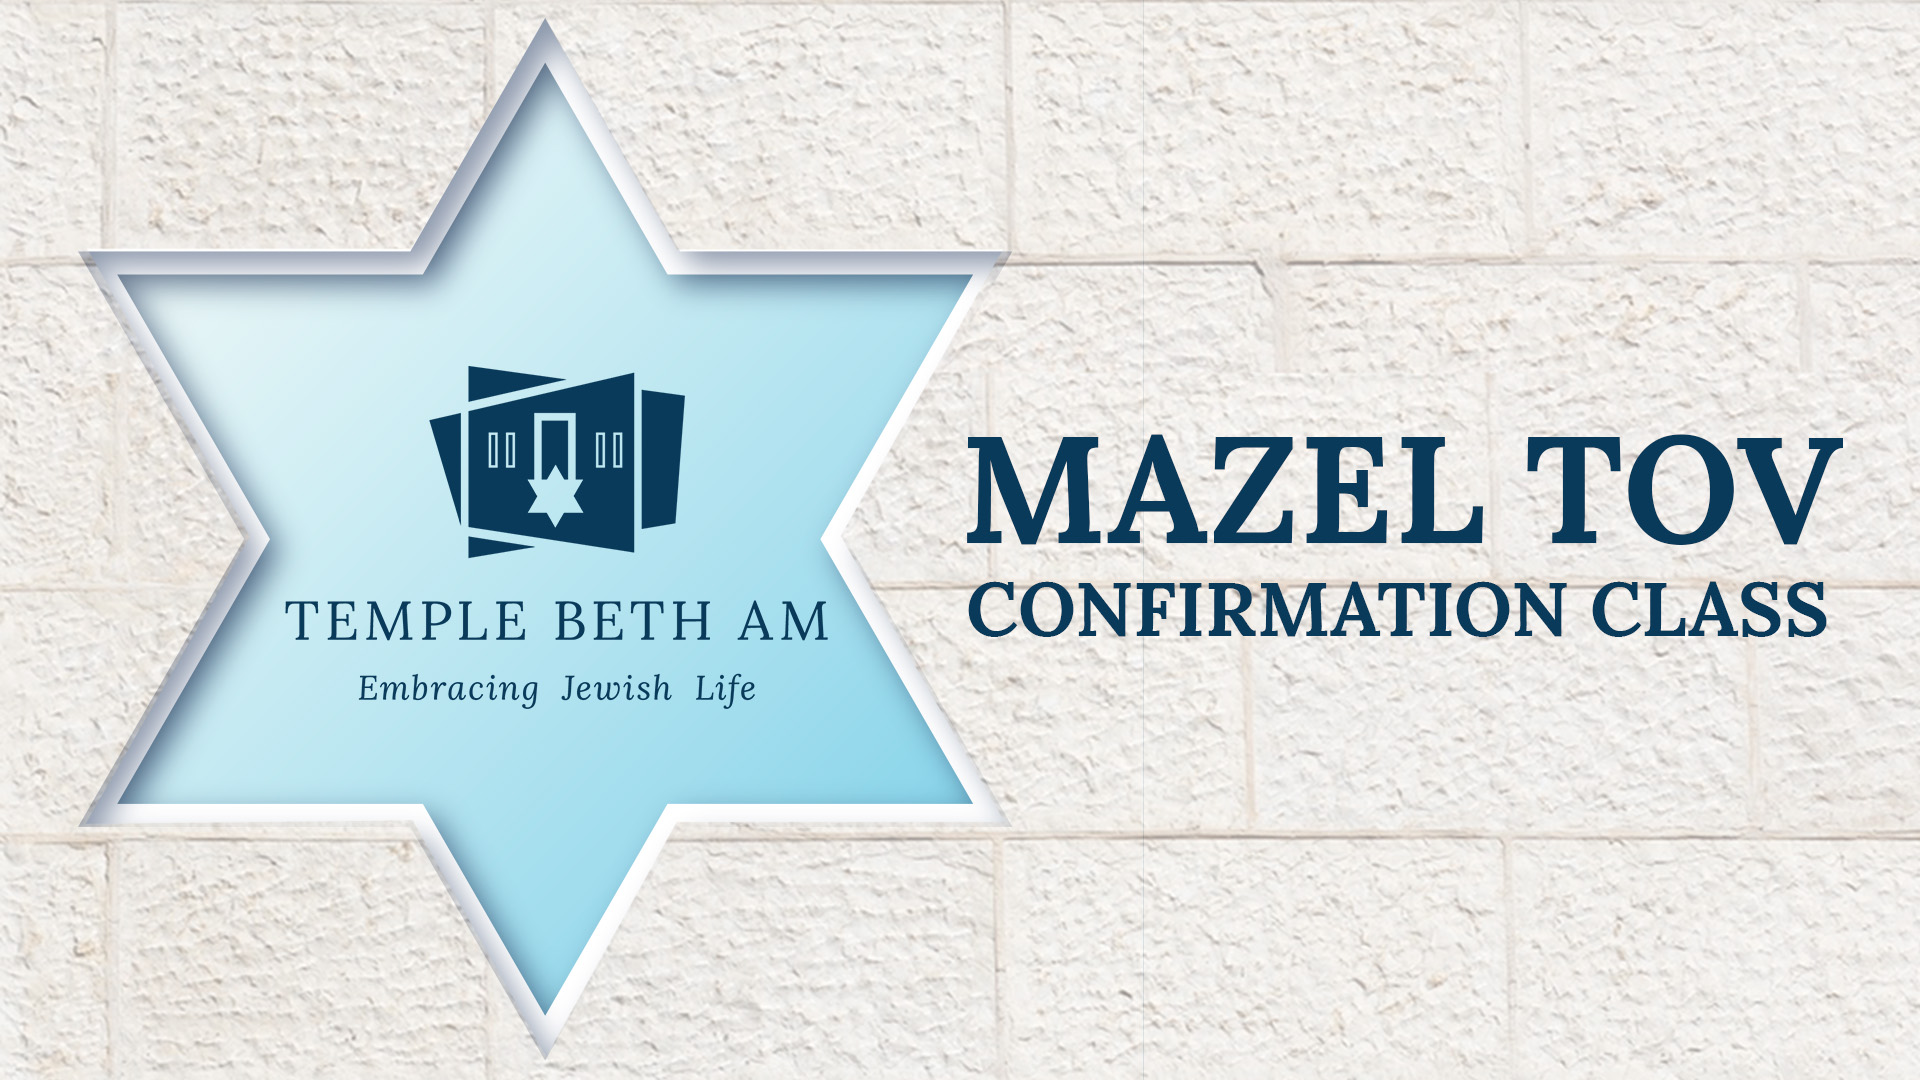 Temple Beth Am Logo Star of David Mazel tov confirmation class